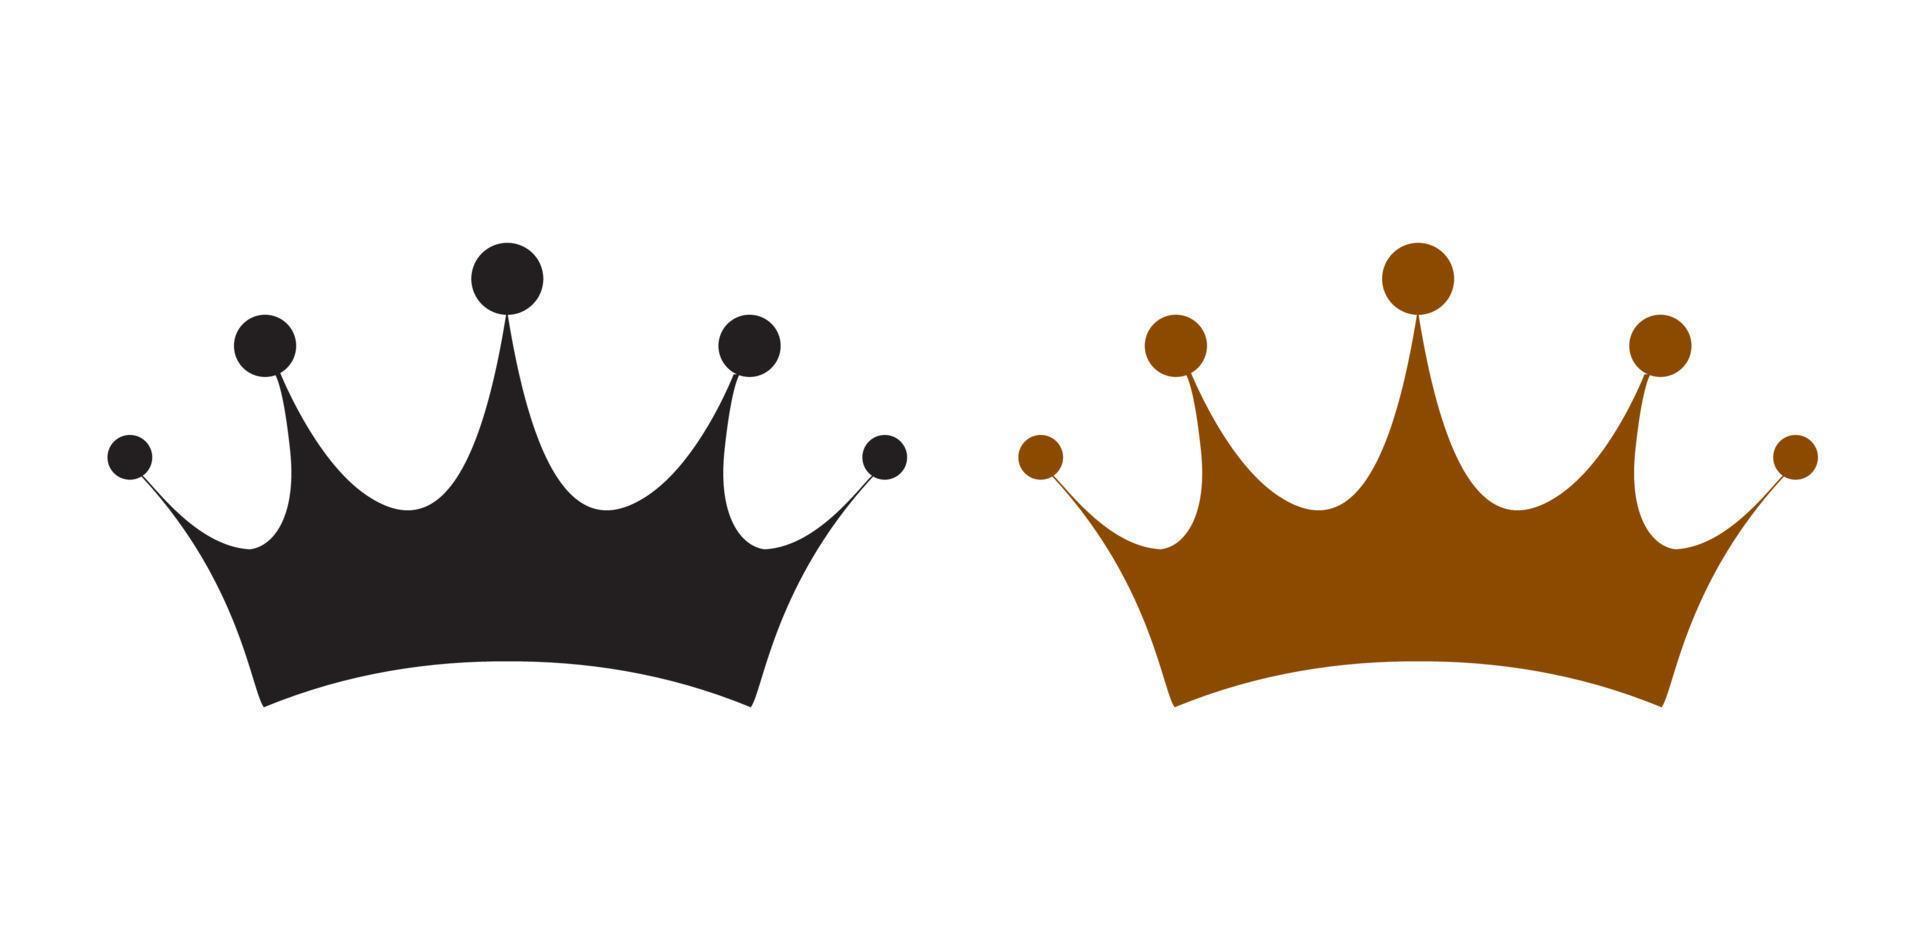 koninklijke kroon vector icon